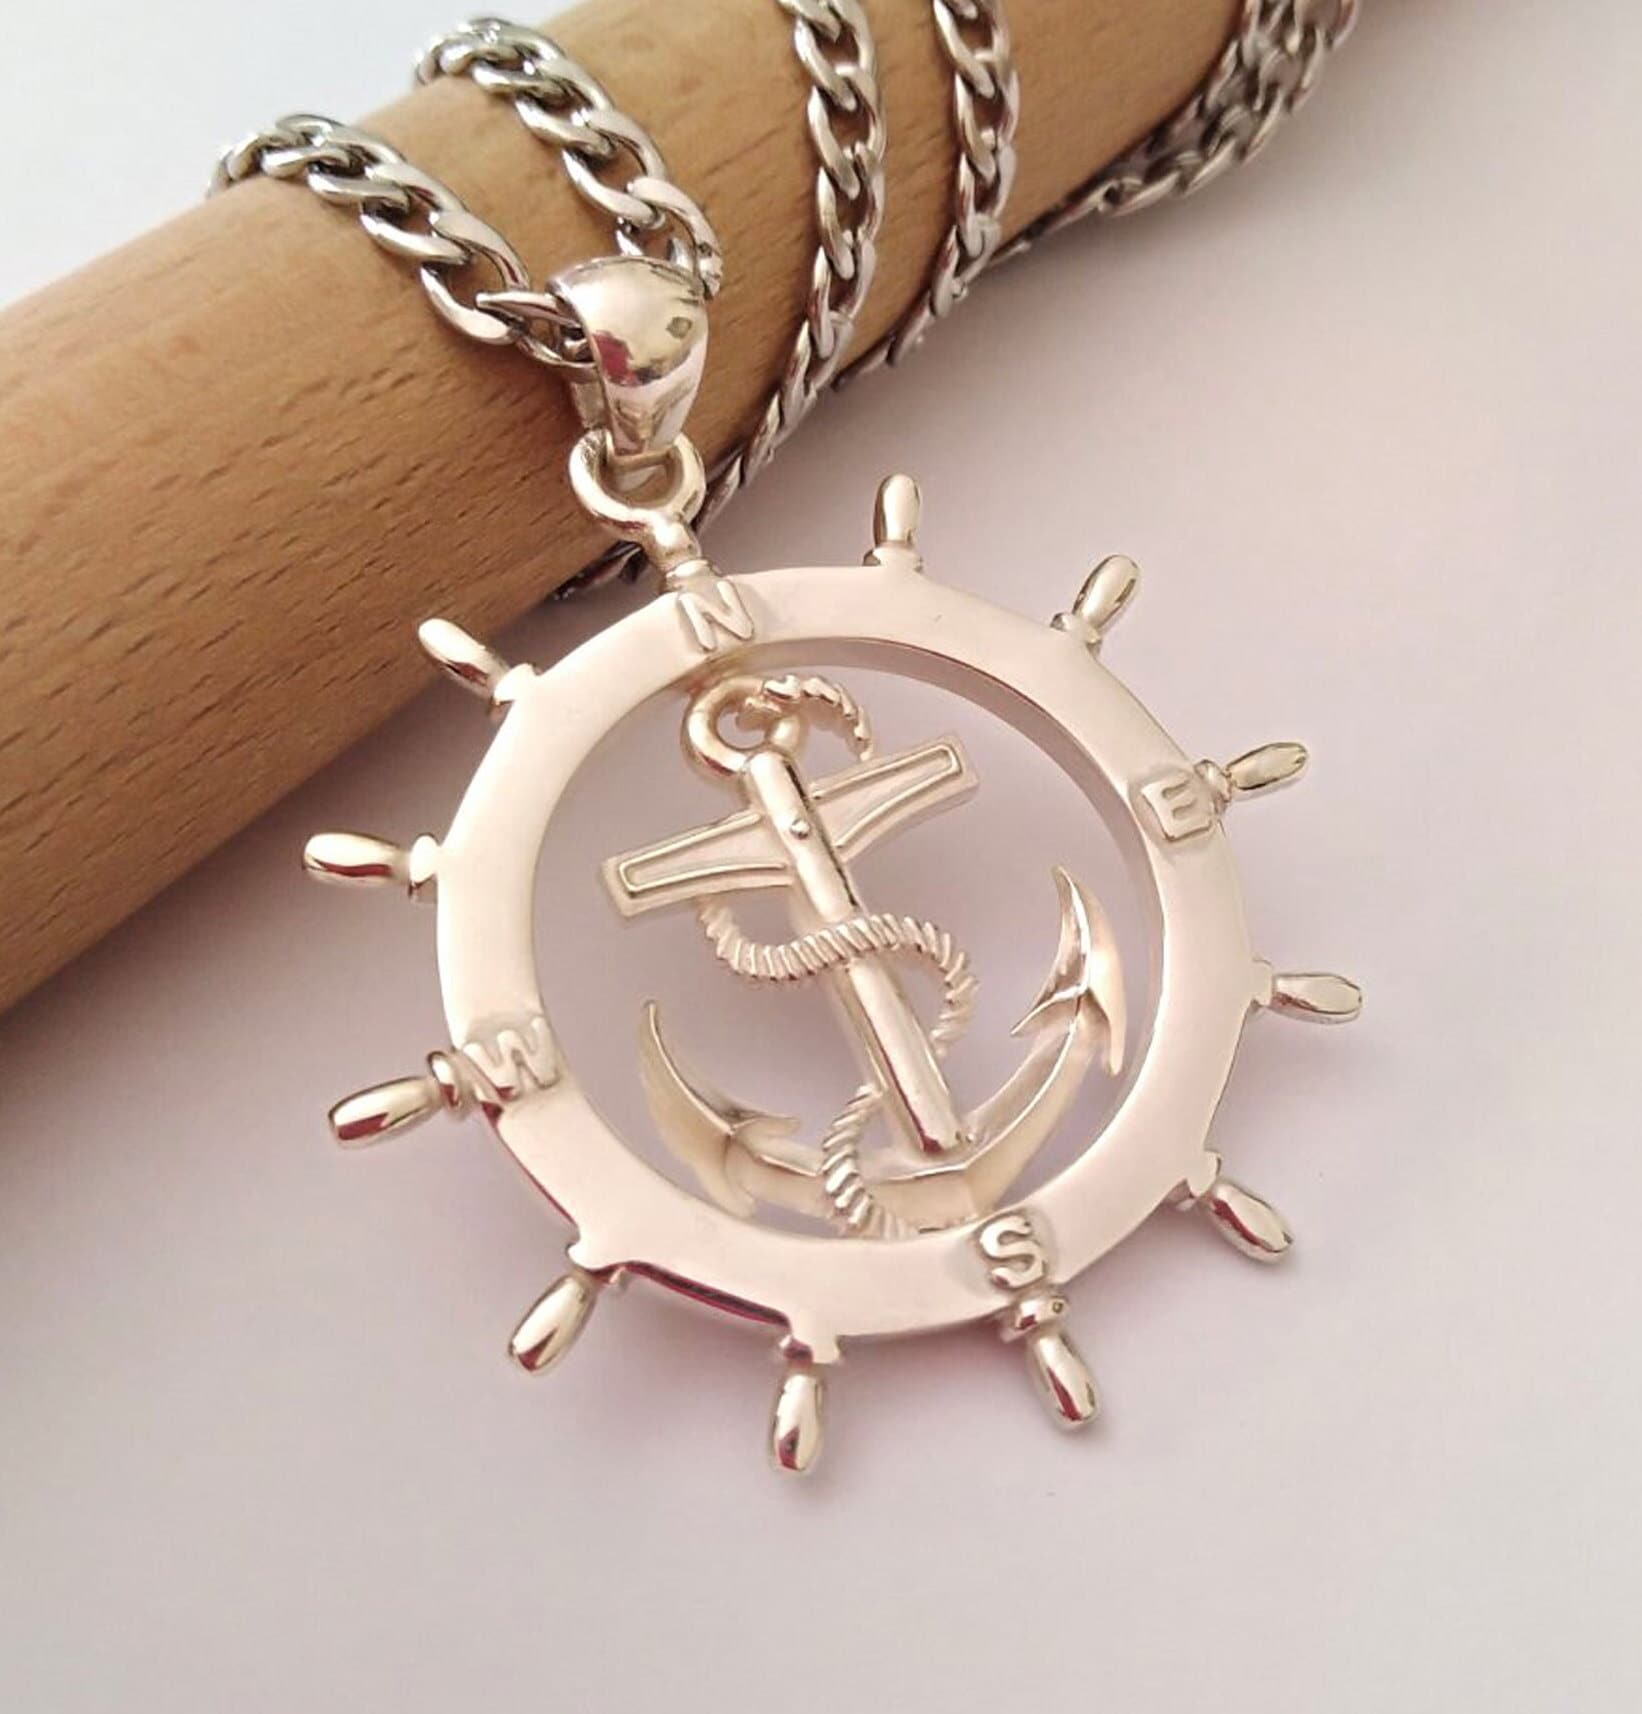 Buy Gold Anchor Pendant, Silver 925 Ship's Wheel Pendant, Men's